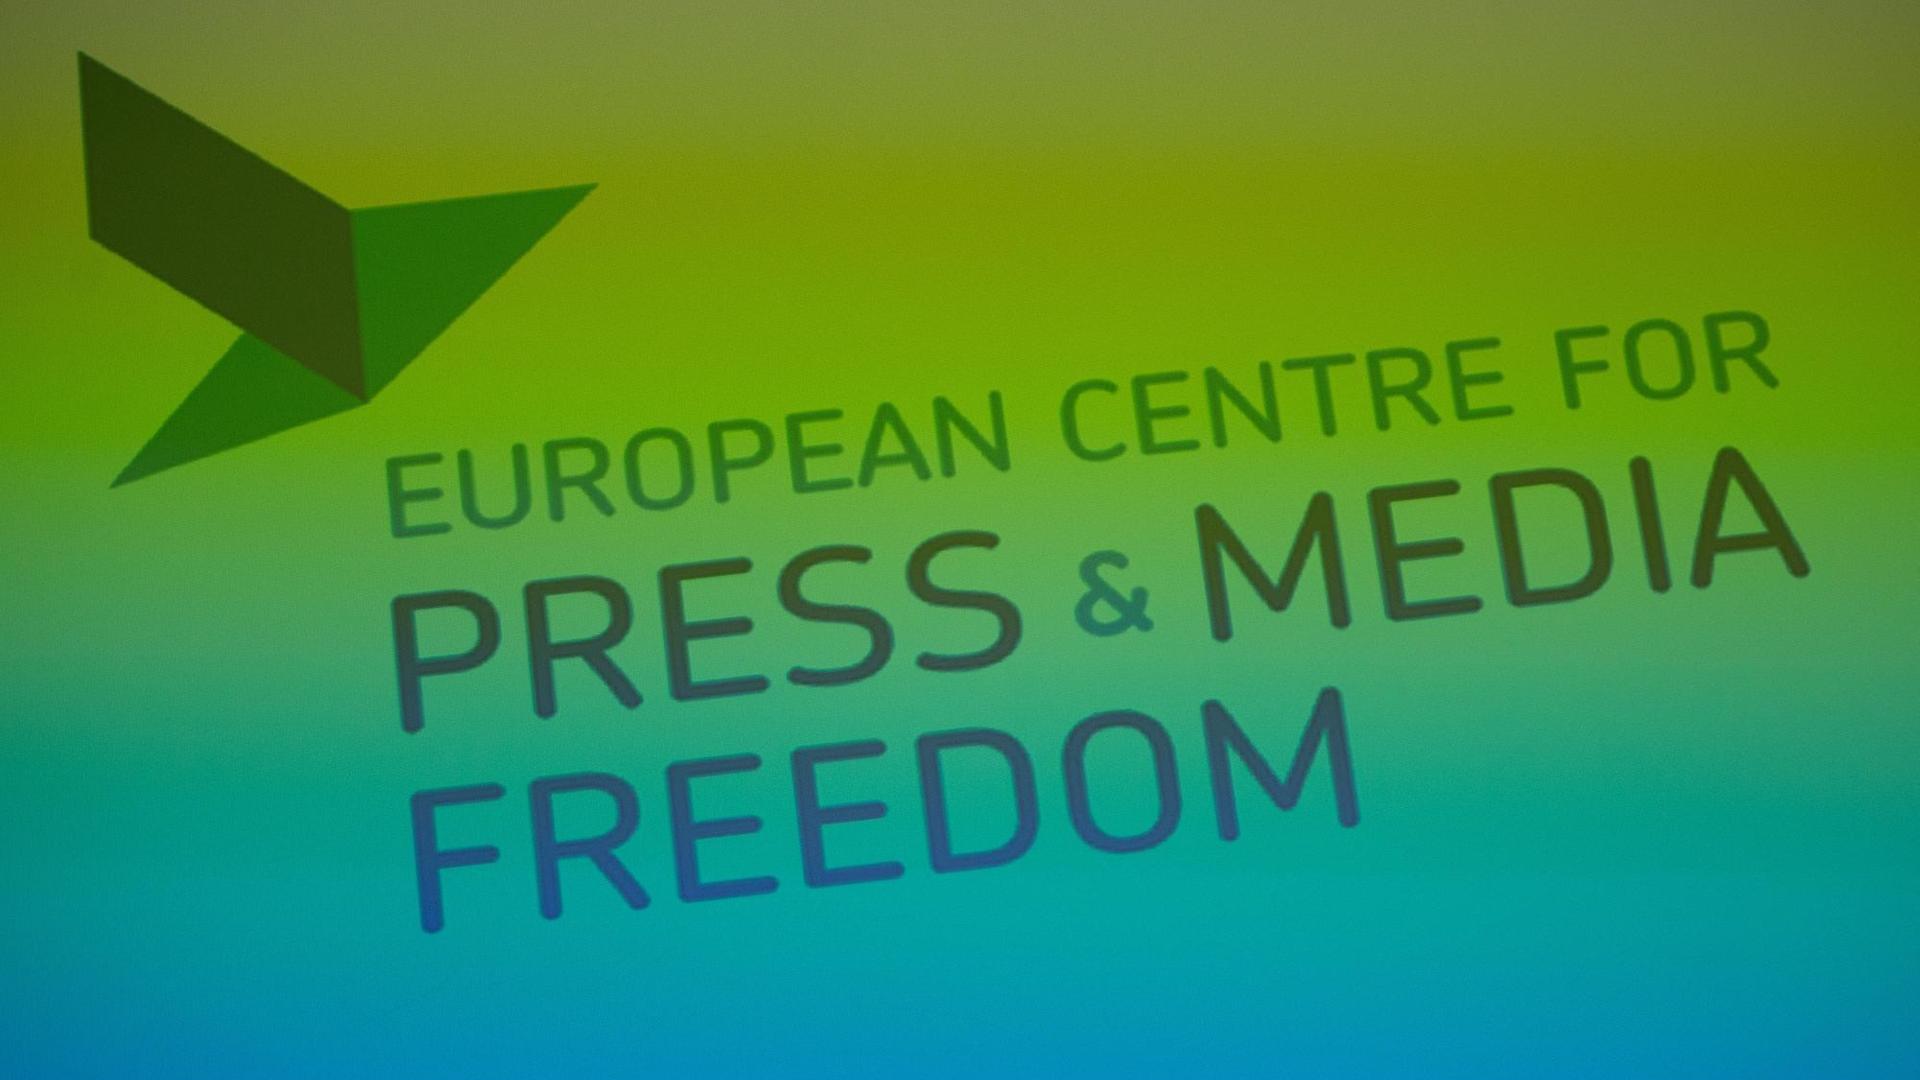 Das Logo mit dem Text der Organsisation European Centre for Press an Media Freedom (Europäischen Zentrum für Presse- und Medienfreiheit - ECPMF), aufgenommen am 24.06.2015 in Leipzig (Sachsen).